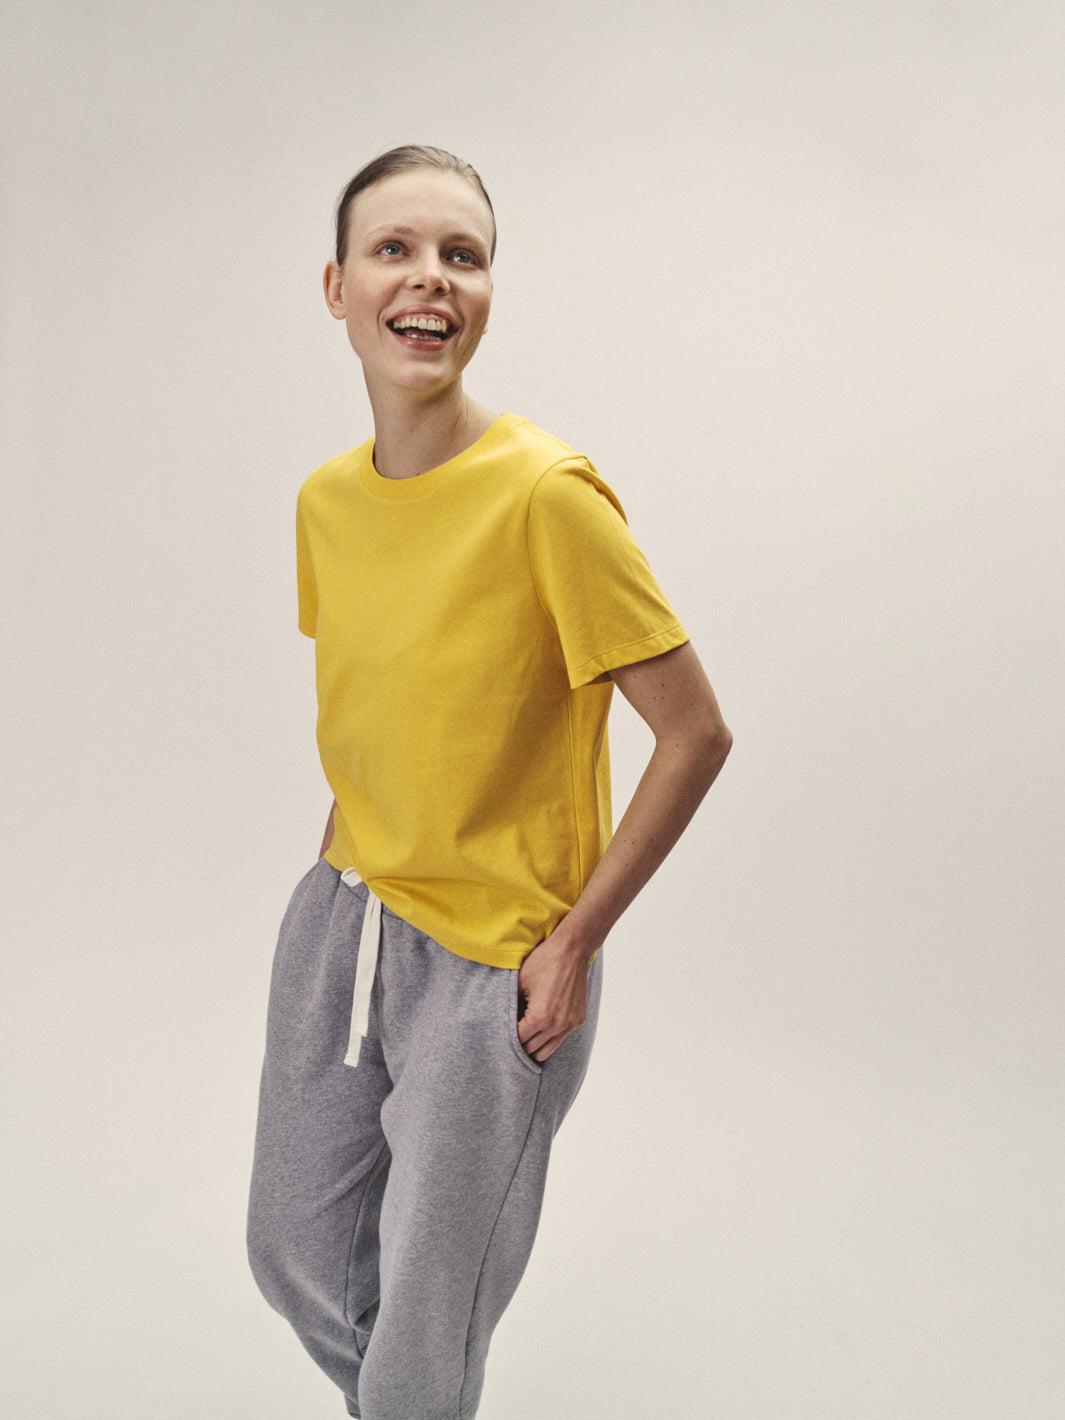 Damen T-Shirt Rundhals Ausschnitt gelb 100% Bio Baumwolle soft made in Portugal